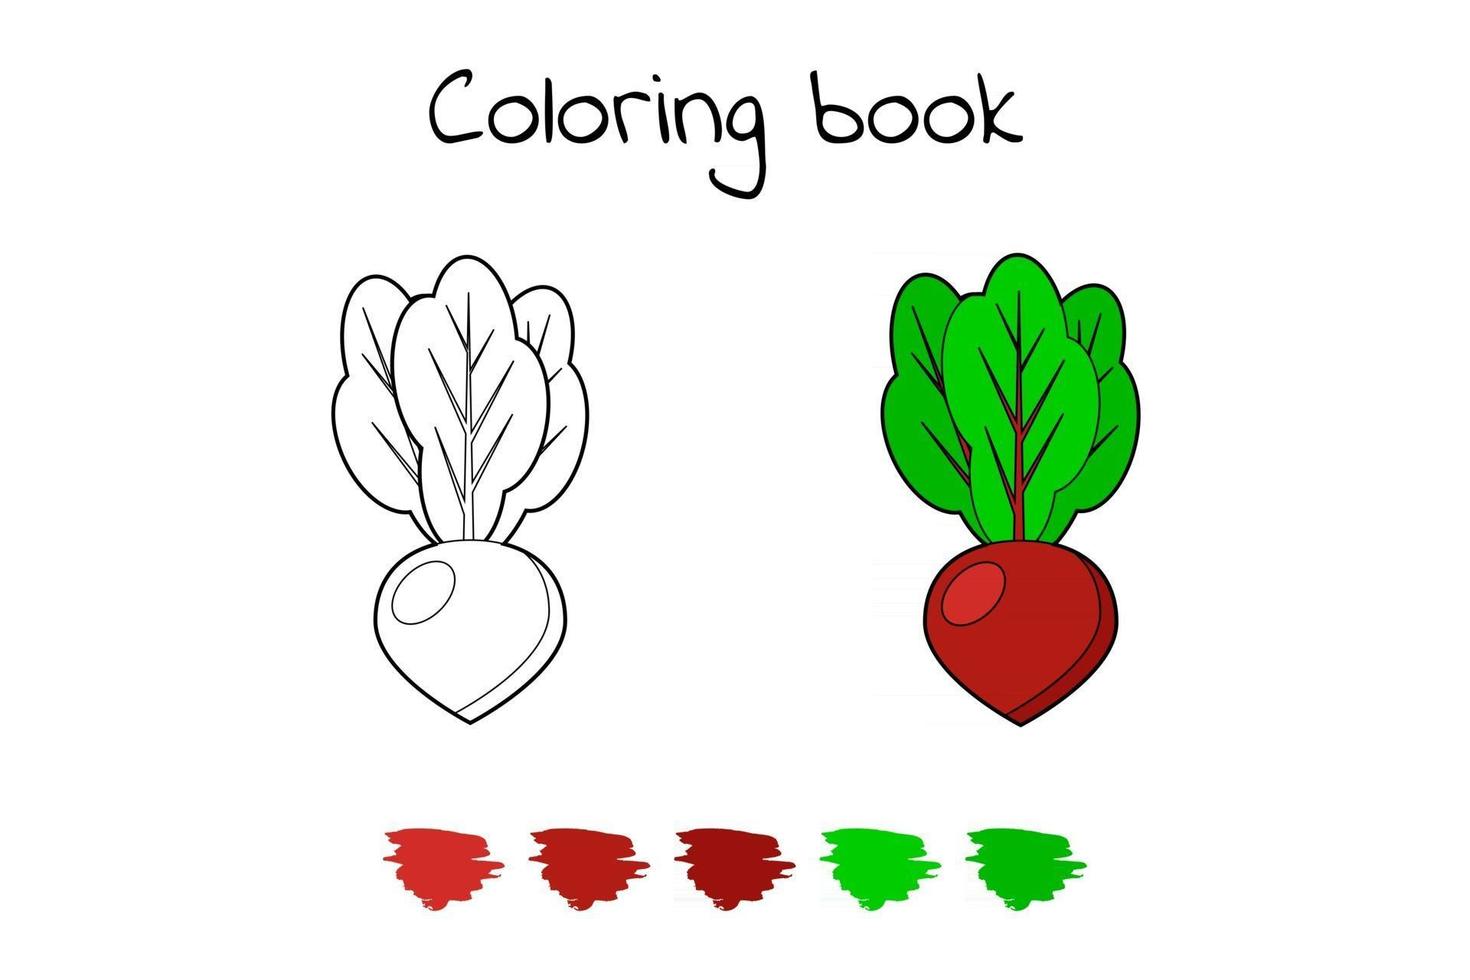 ilustração vetorial. jogo para crianças. vegetal. beterraba para colorir vetor